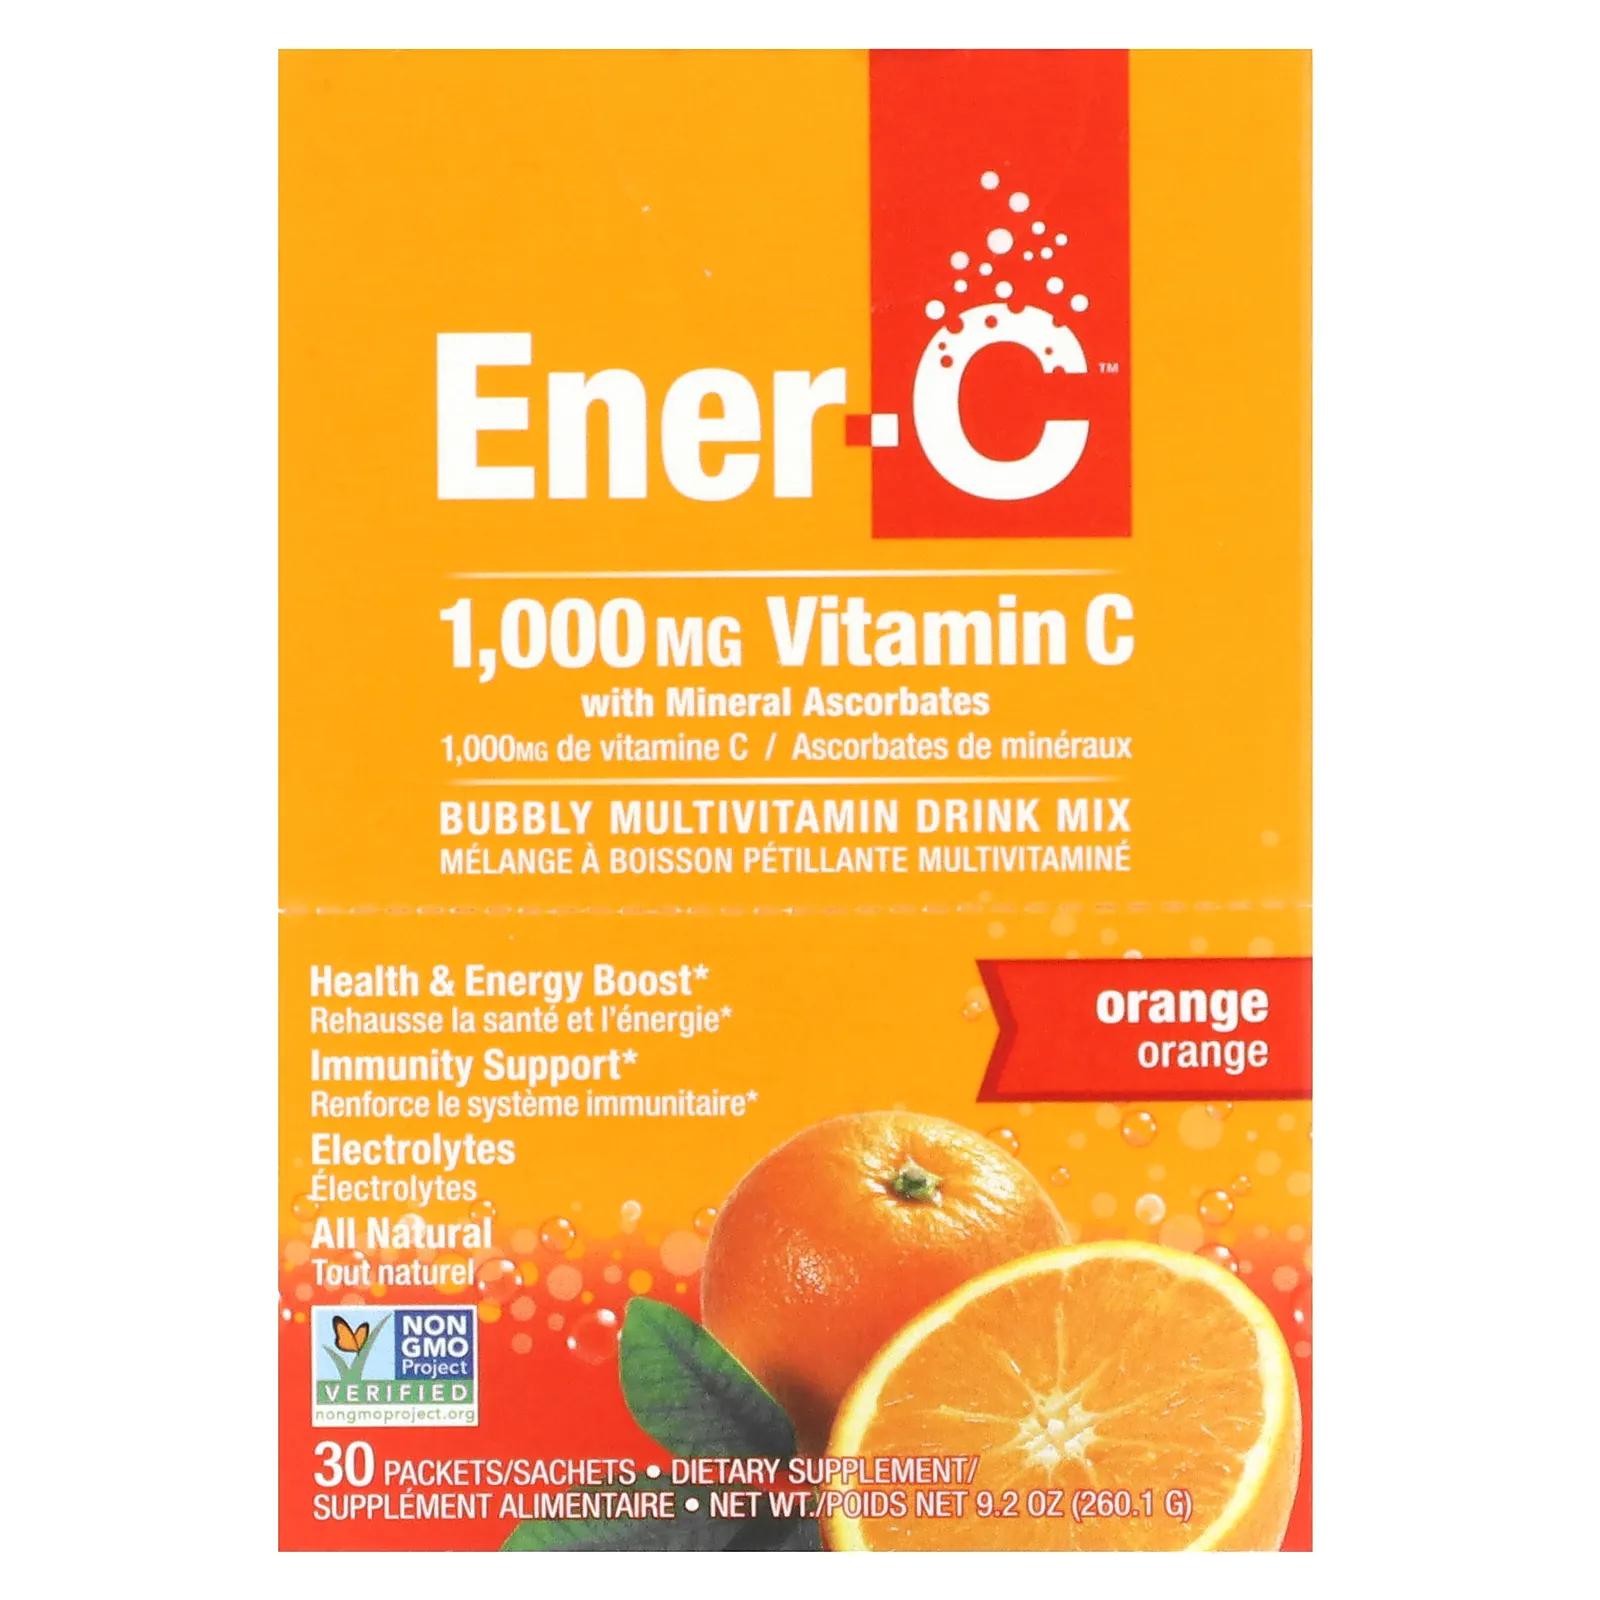 Ener-C Витамин C шипучий растворимый порошок для напитка со вкусом апельсина 30 пакетиков 9,2 унции (260,1 г) витамин c со вкусом апельсина ener c 1000 мг 30 пакетиков